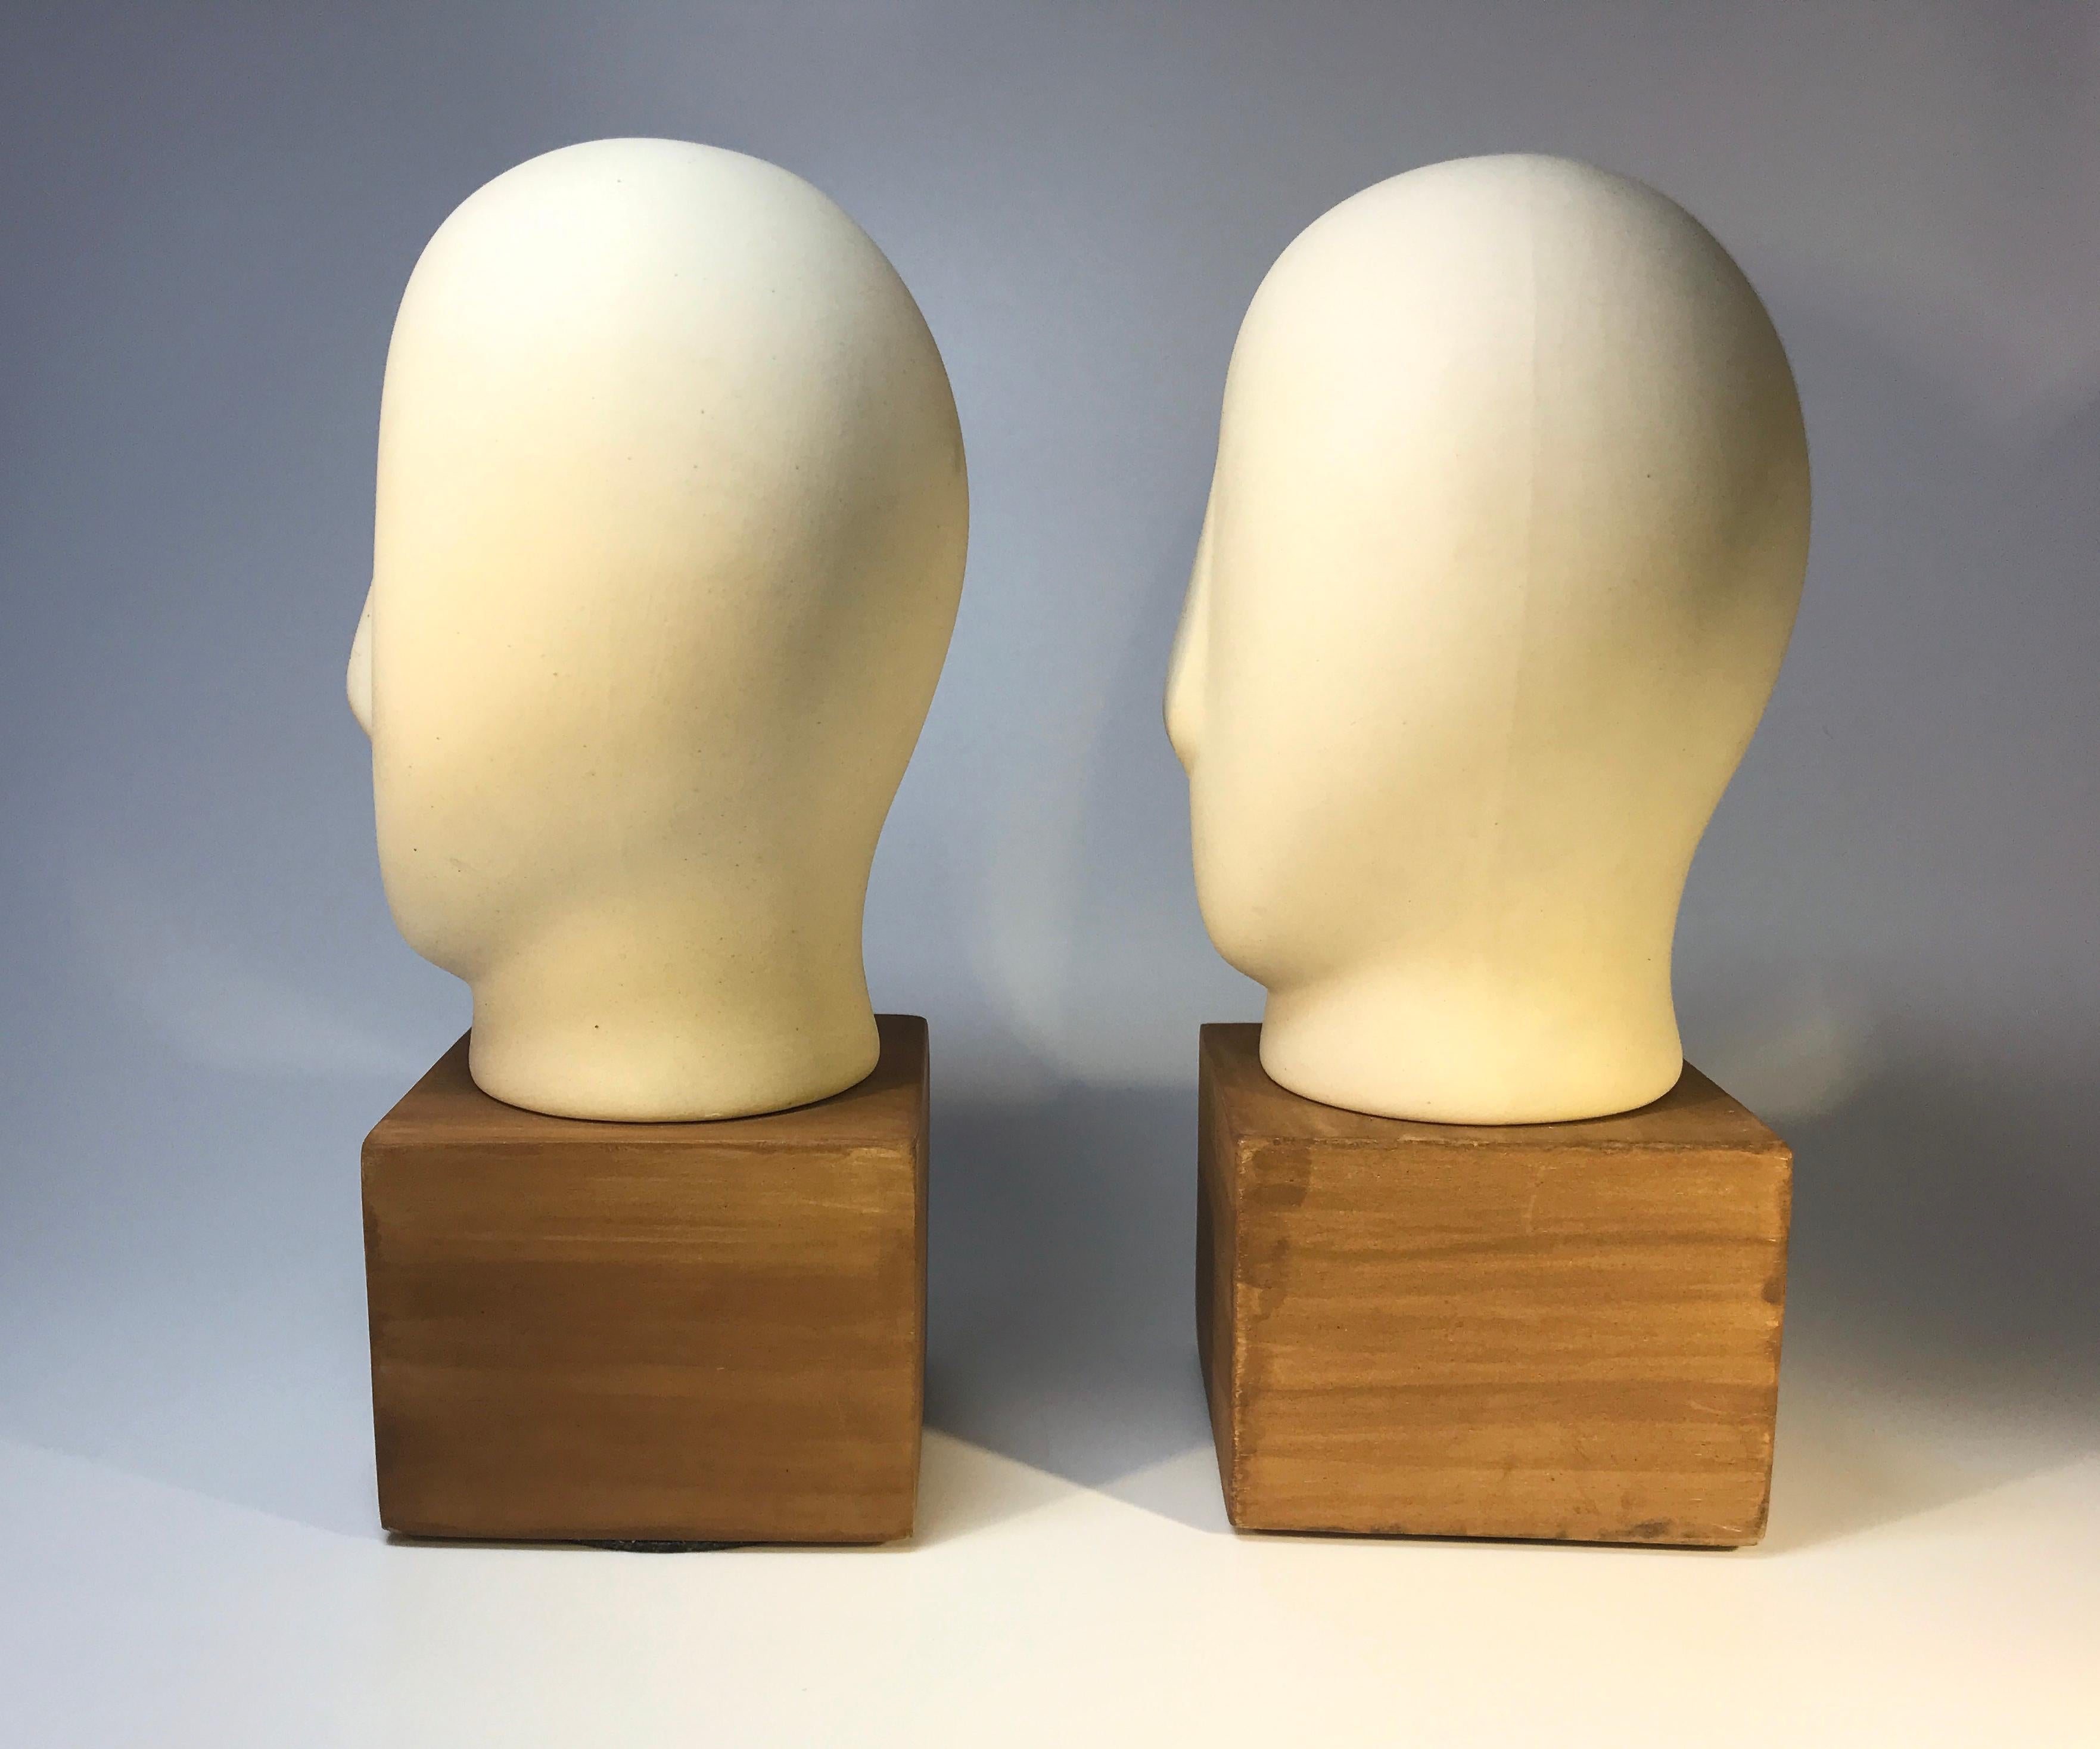 20th Century Pair of Ceramic Cycladic Sculptures Midcentury 1960s Retro